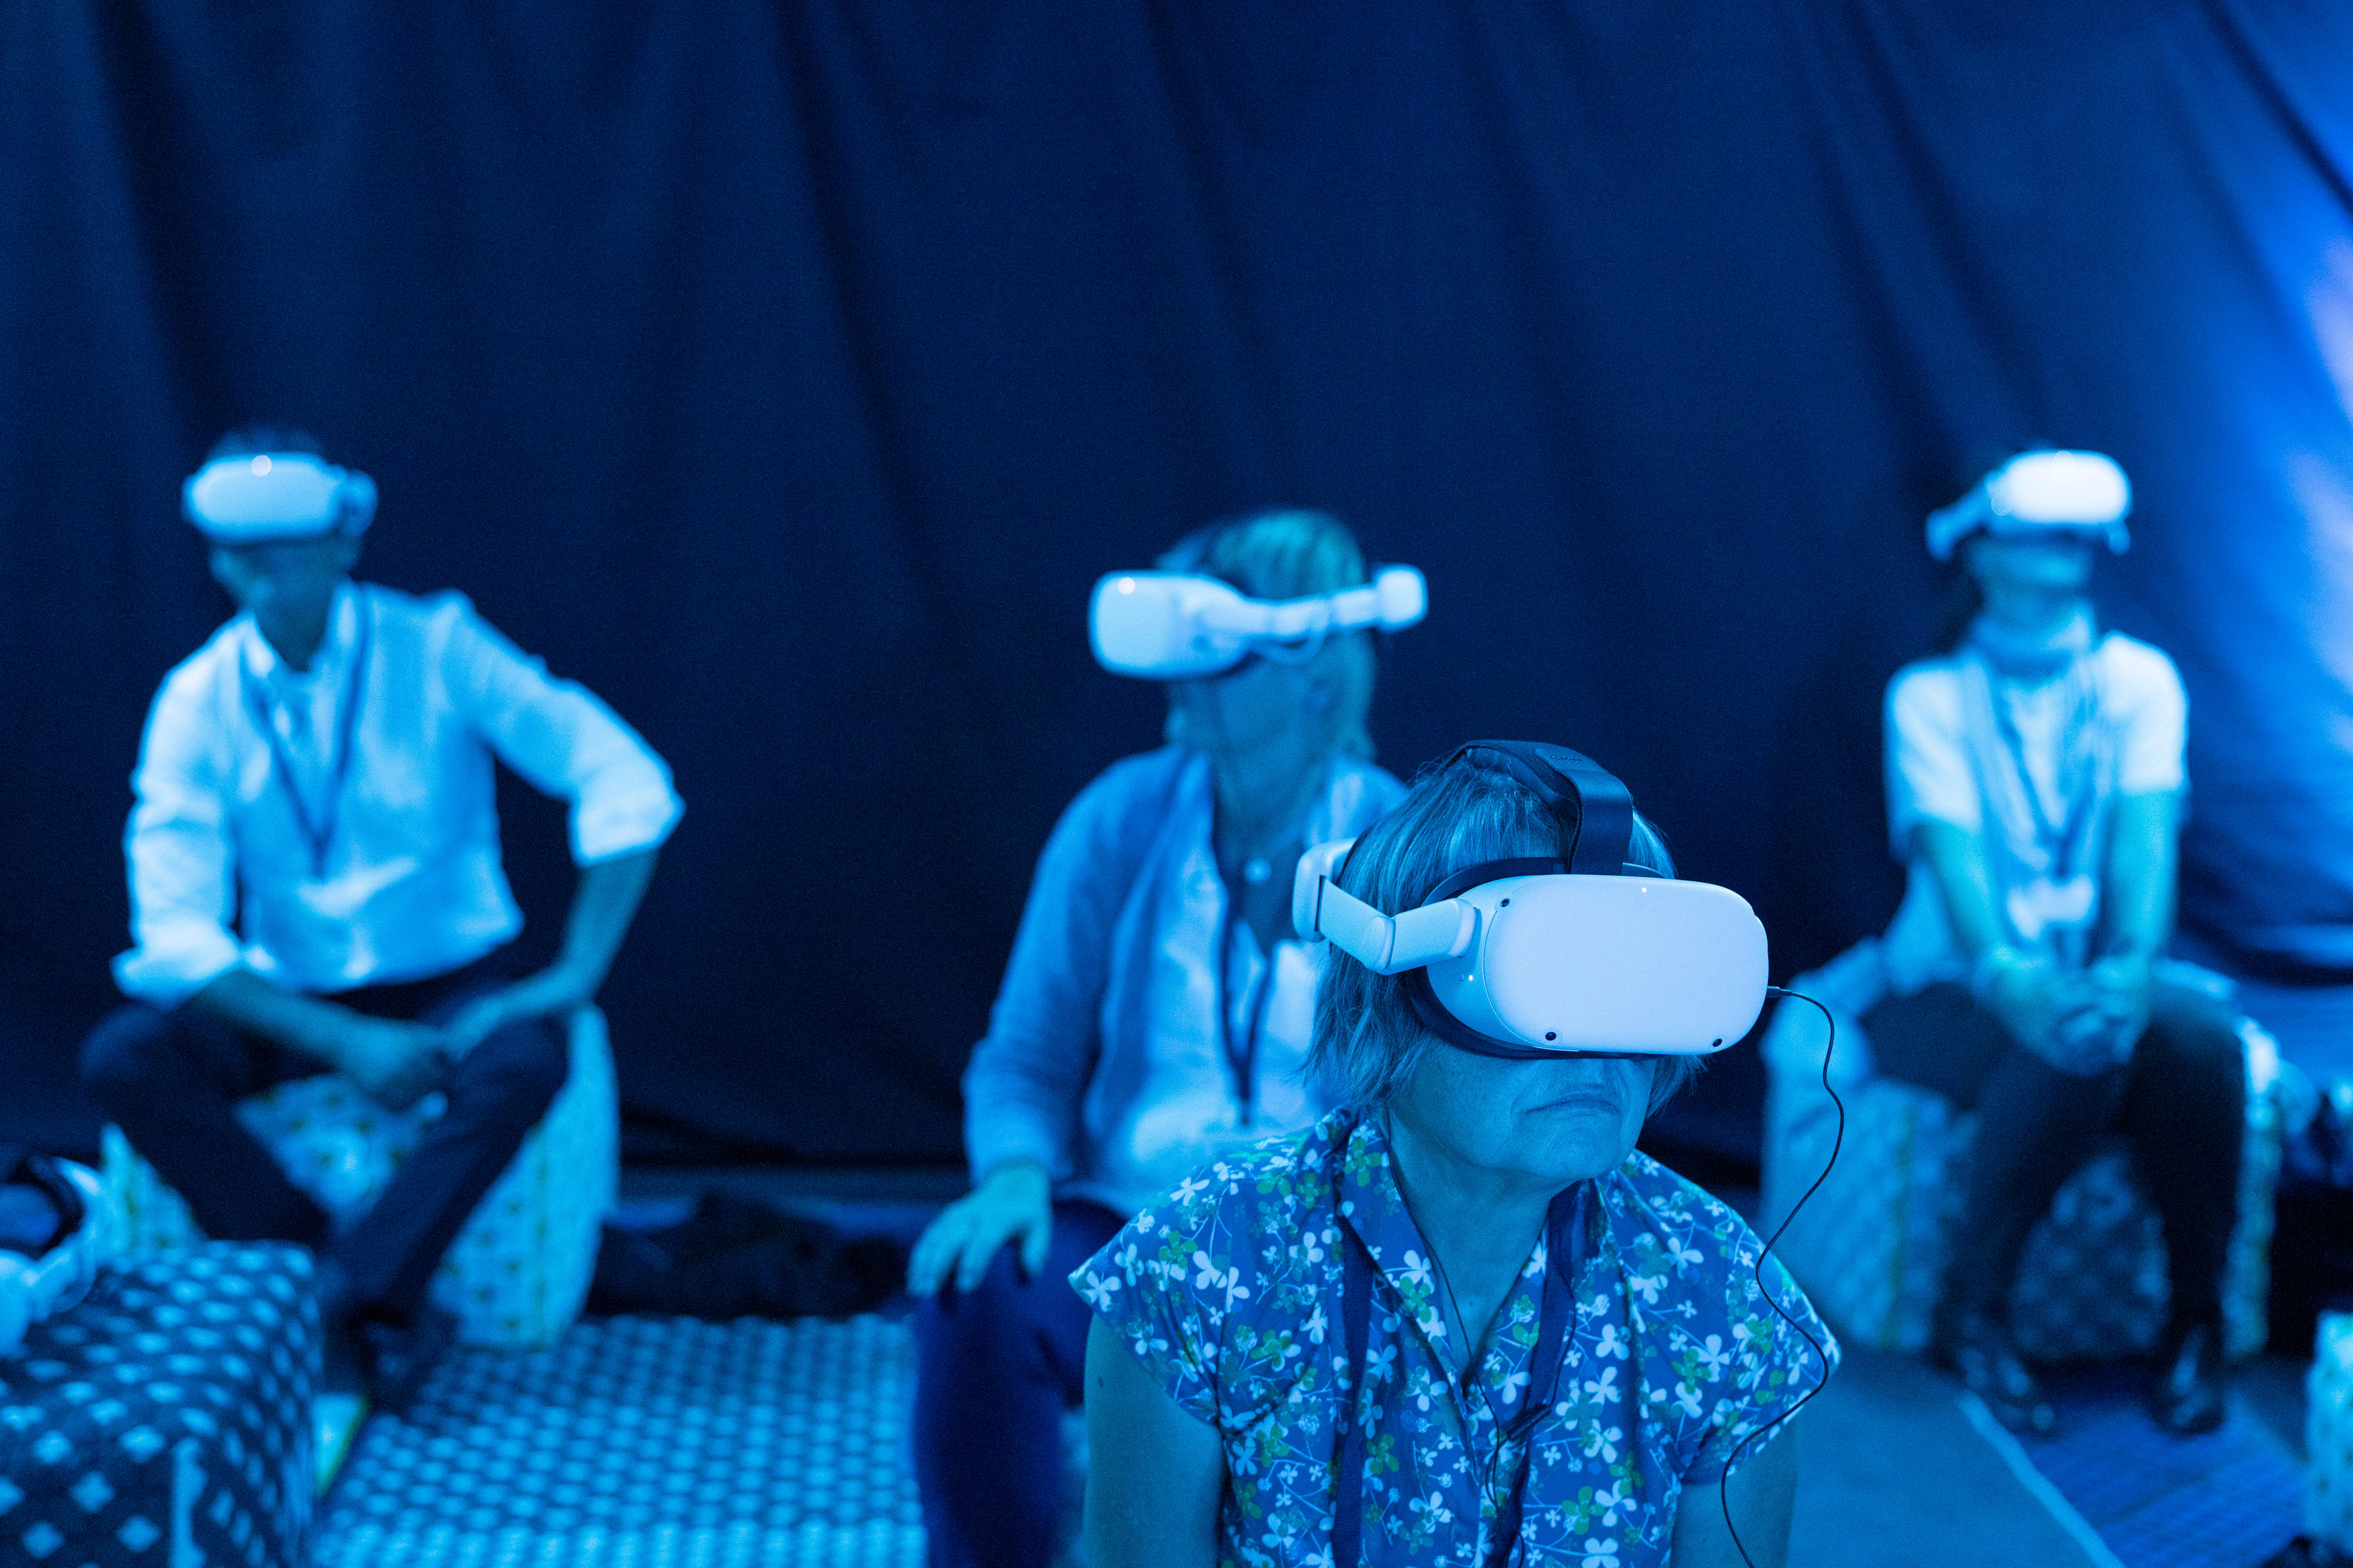 Vier Personen sitzen in einem bläulich beleuchteten Raum und tragen VR-Brillen.